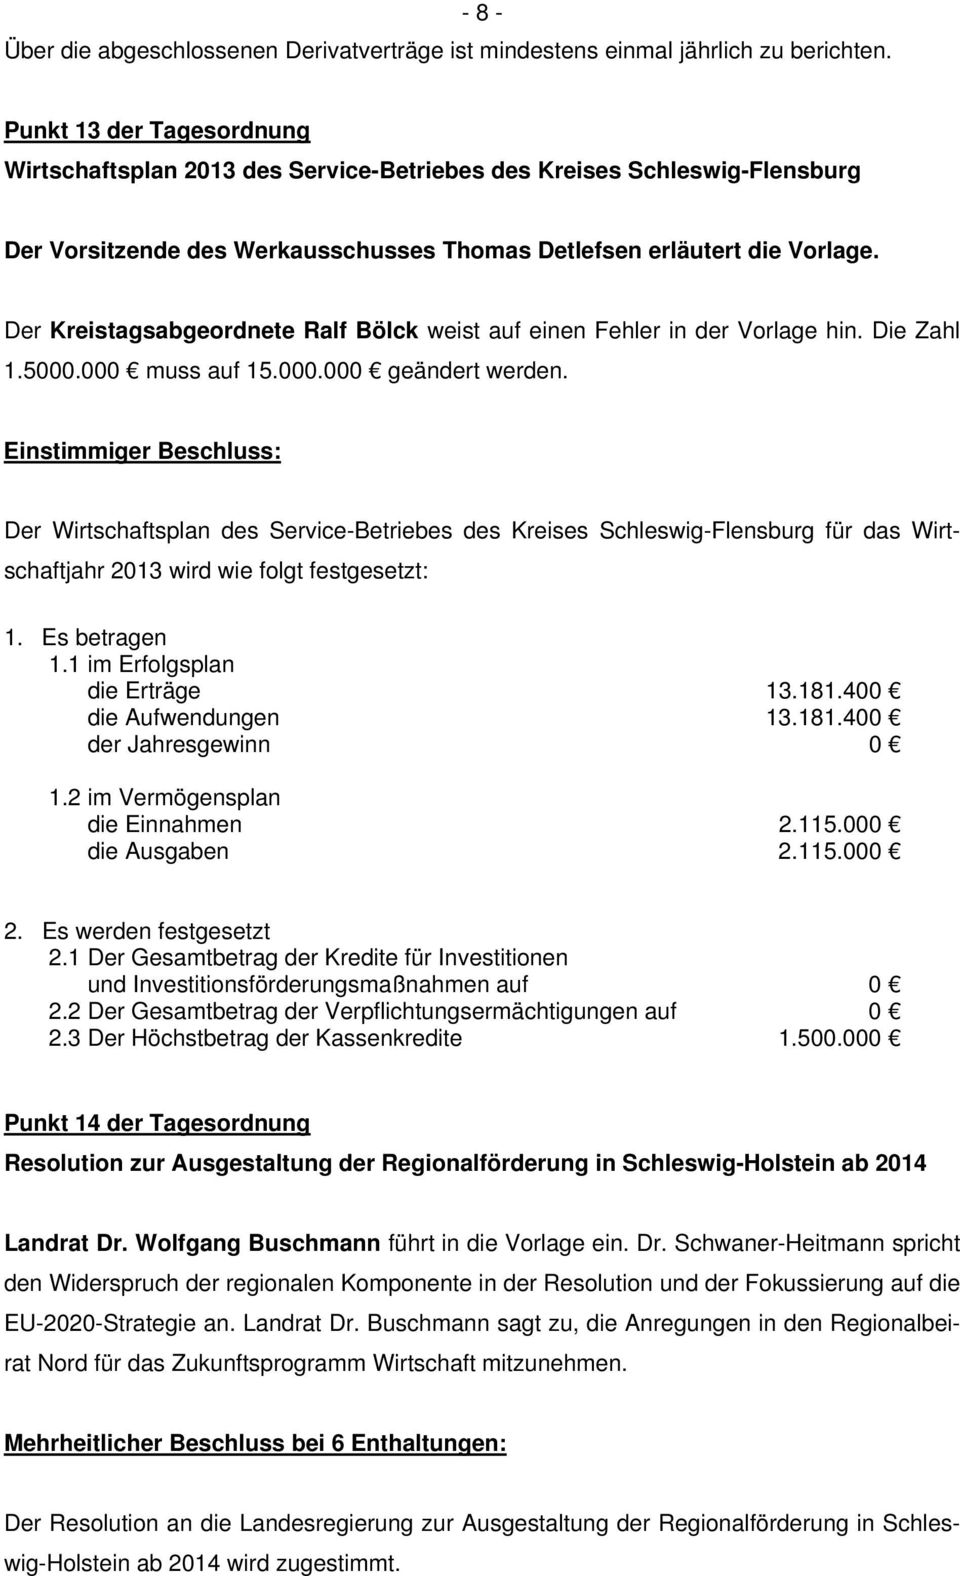 Der Kreistagsabgeordnete Ralf Bölck weist auf einen Fehler in der Vorlage hin. Die Zahl 1.5000.000 muss auf 15.000.000 geändert werden.